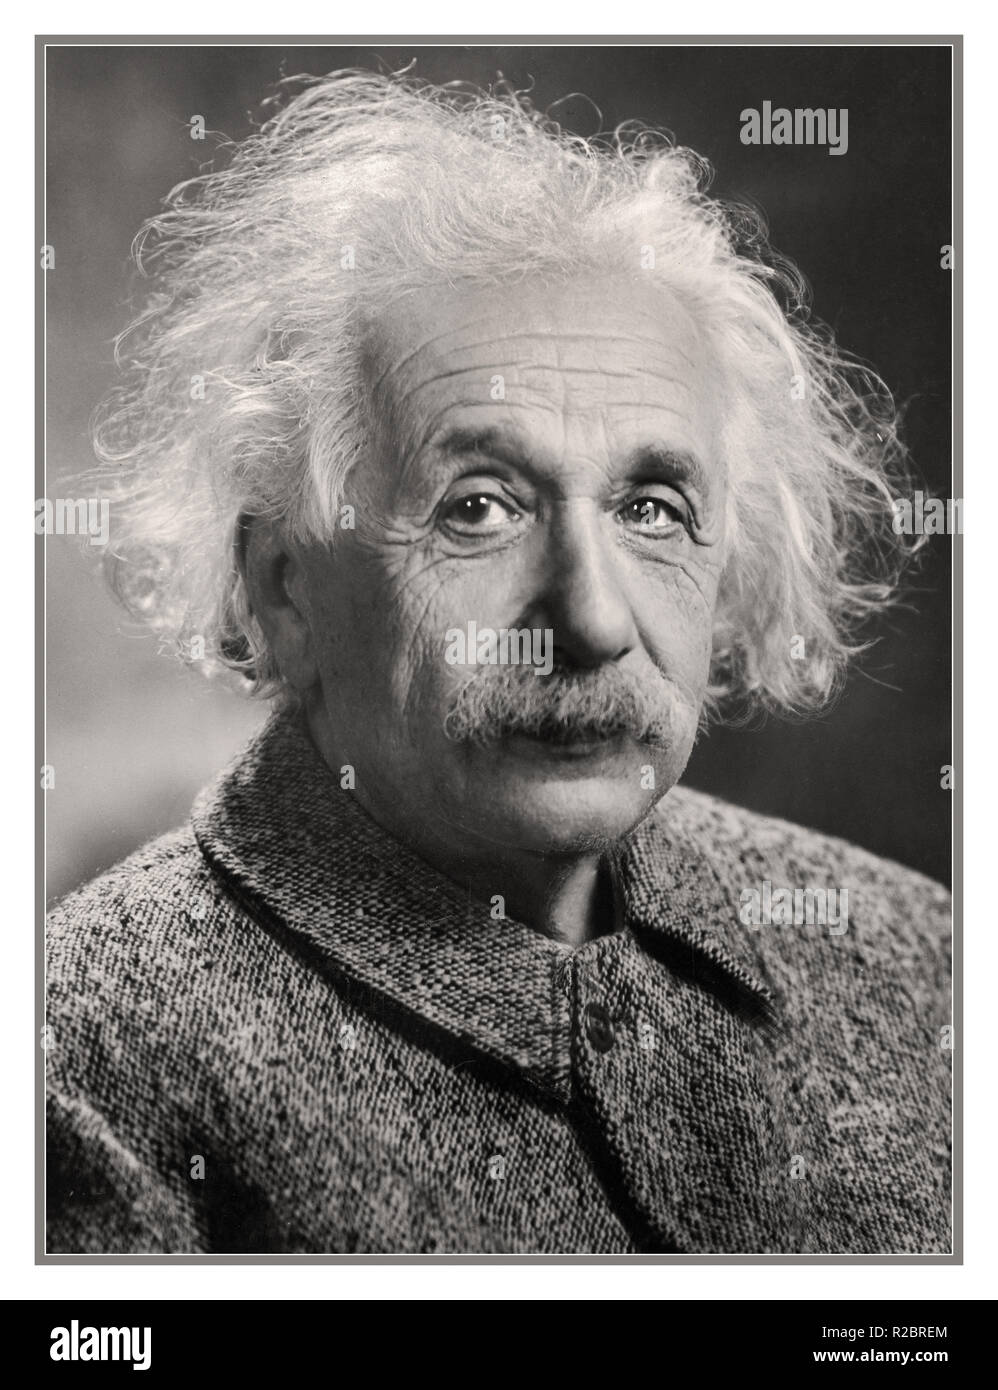 Albert Einstein theoretische Physiker. Albert Einstein war ein Deutscher - geborener theoretischer Physiker, der die Relativitätstheorie entwickelt, der eine der beiden Säulen der modernen Physik. Seine Arbeit ist auch für seinen Einfluss auf die Philosophie der Wissenschaft bekannt. Digital verbesserte Bild original 40er Studio Wirkung und Qualität zu produzieren. Stockfoto